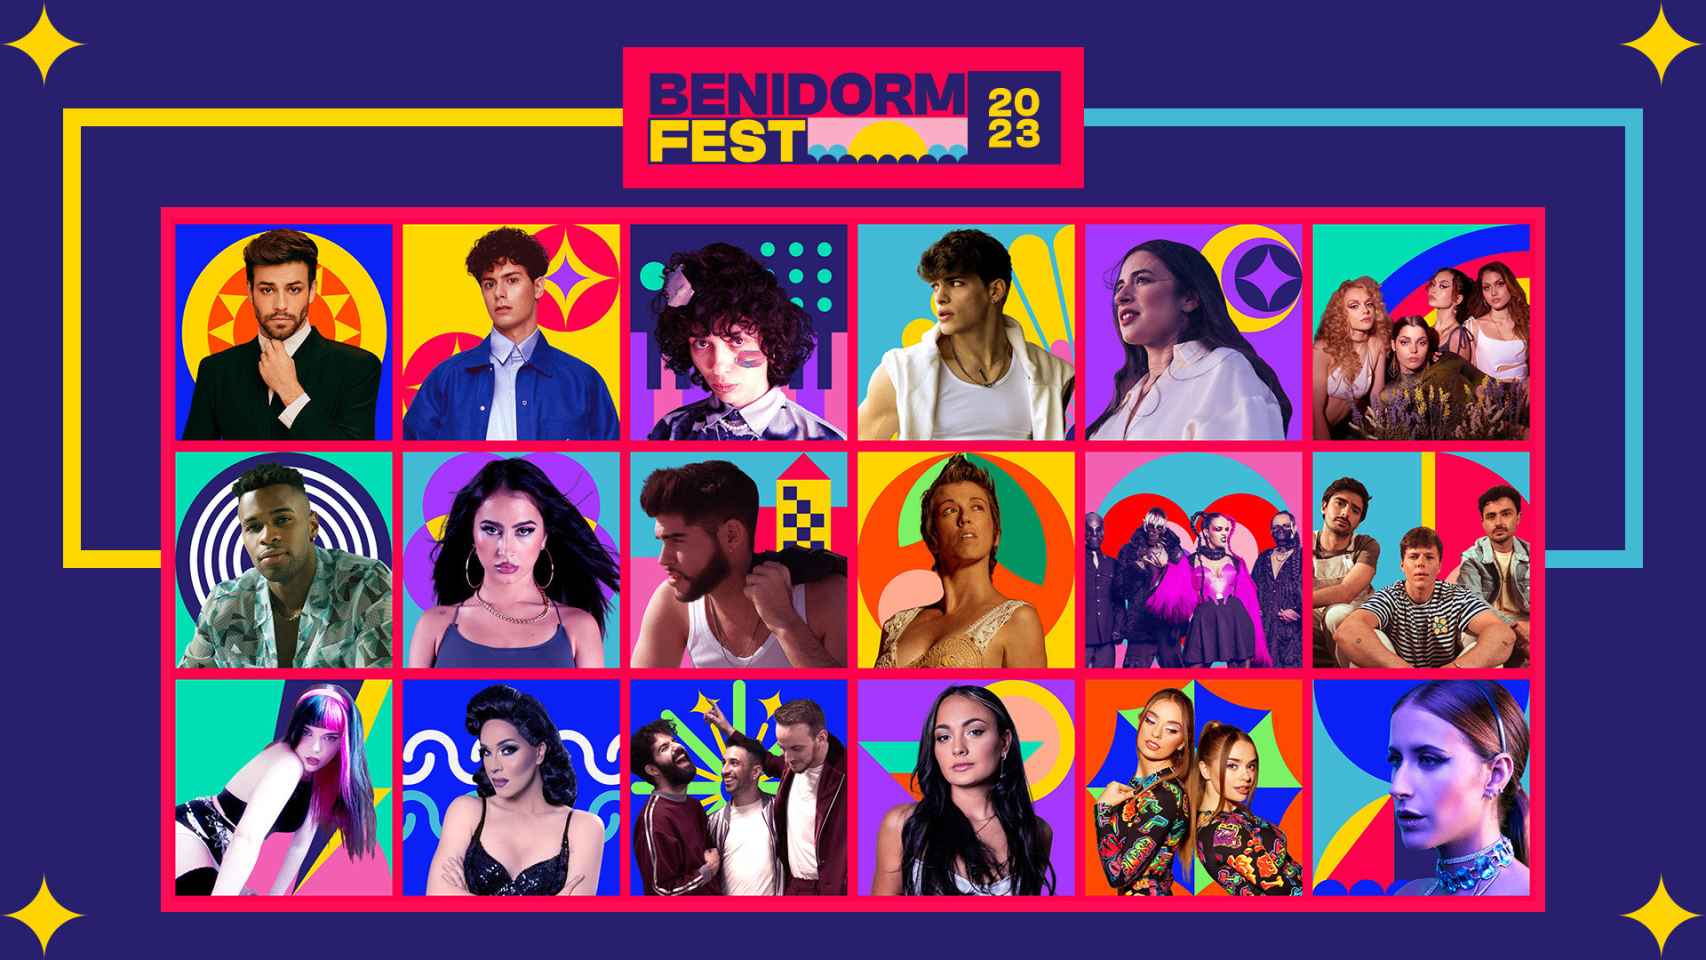 Los participantes en el Benidorm Fest 2023, en su cartel promocional.